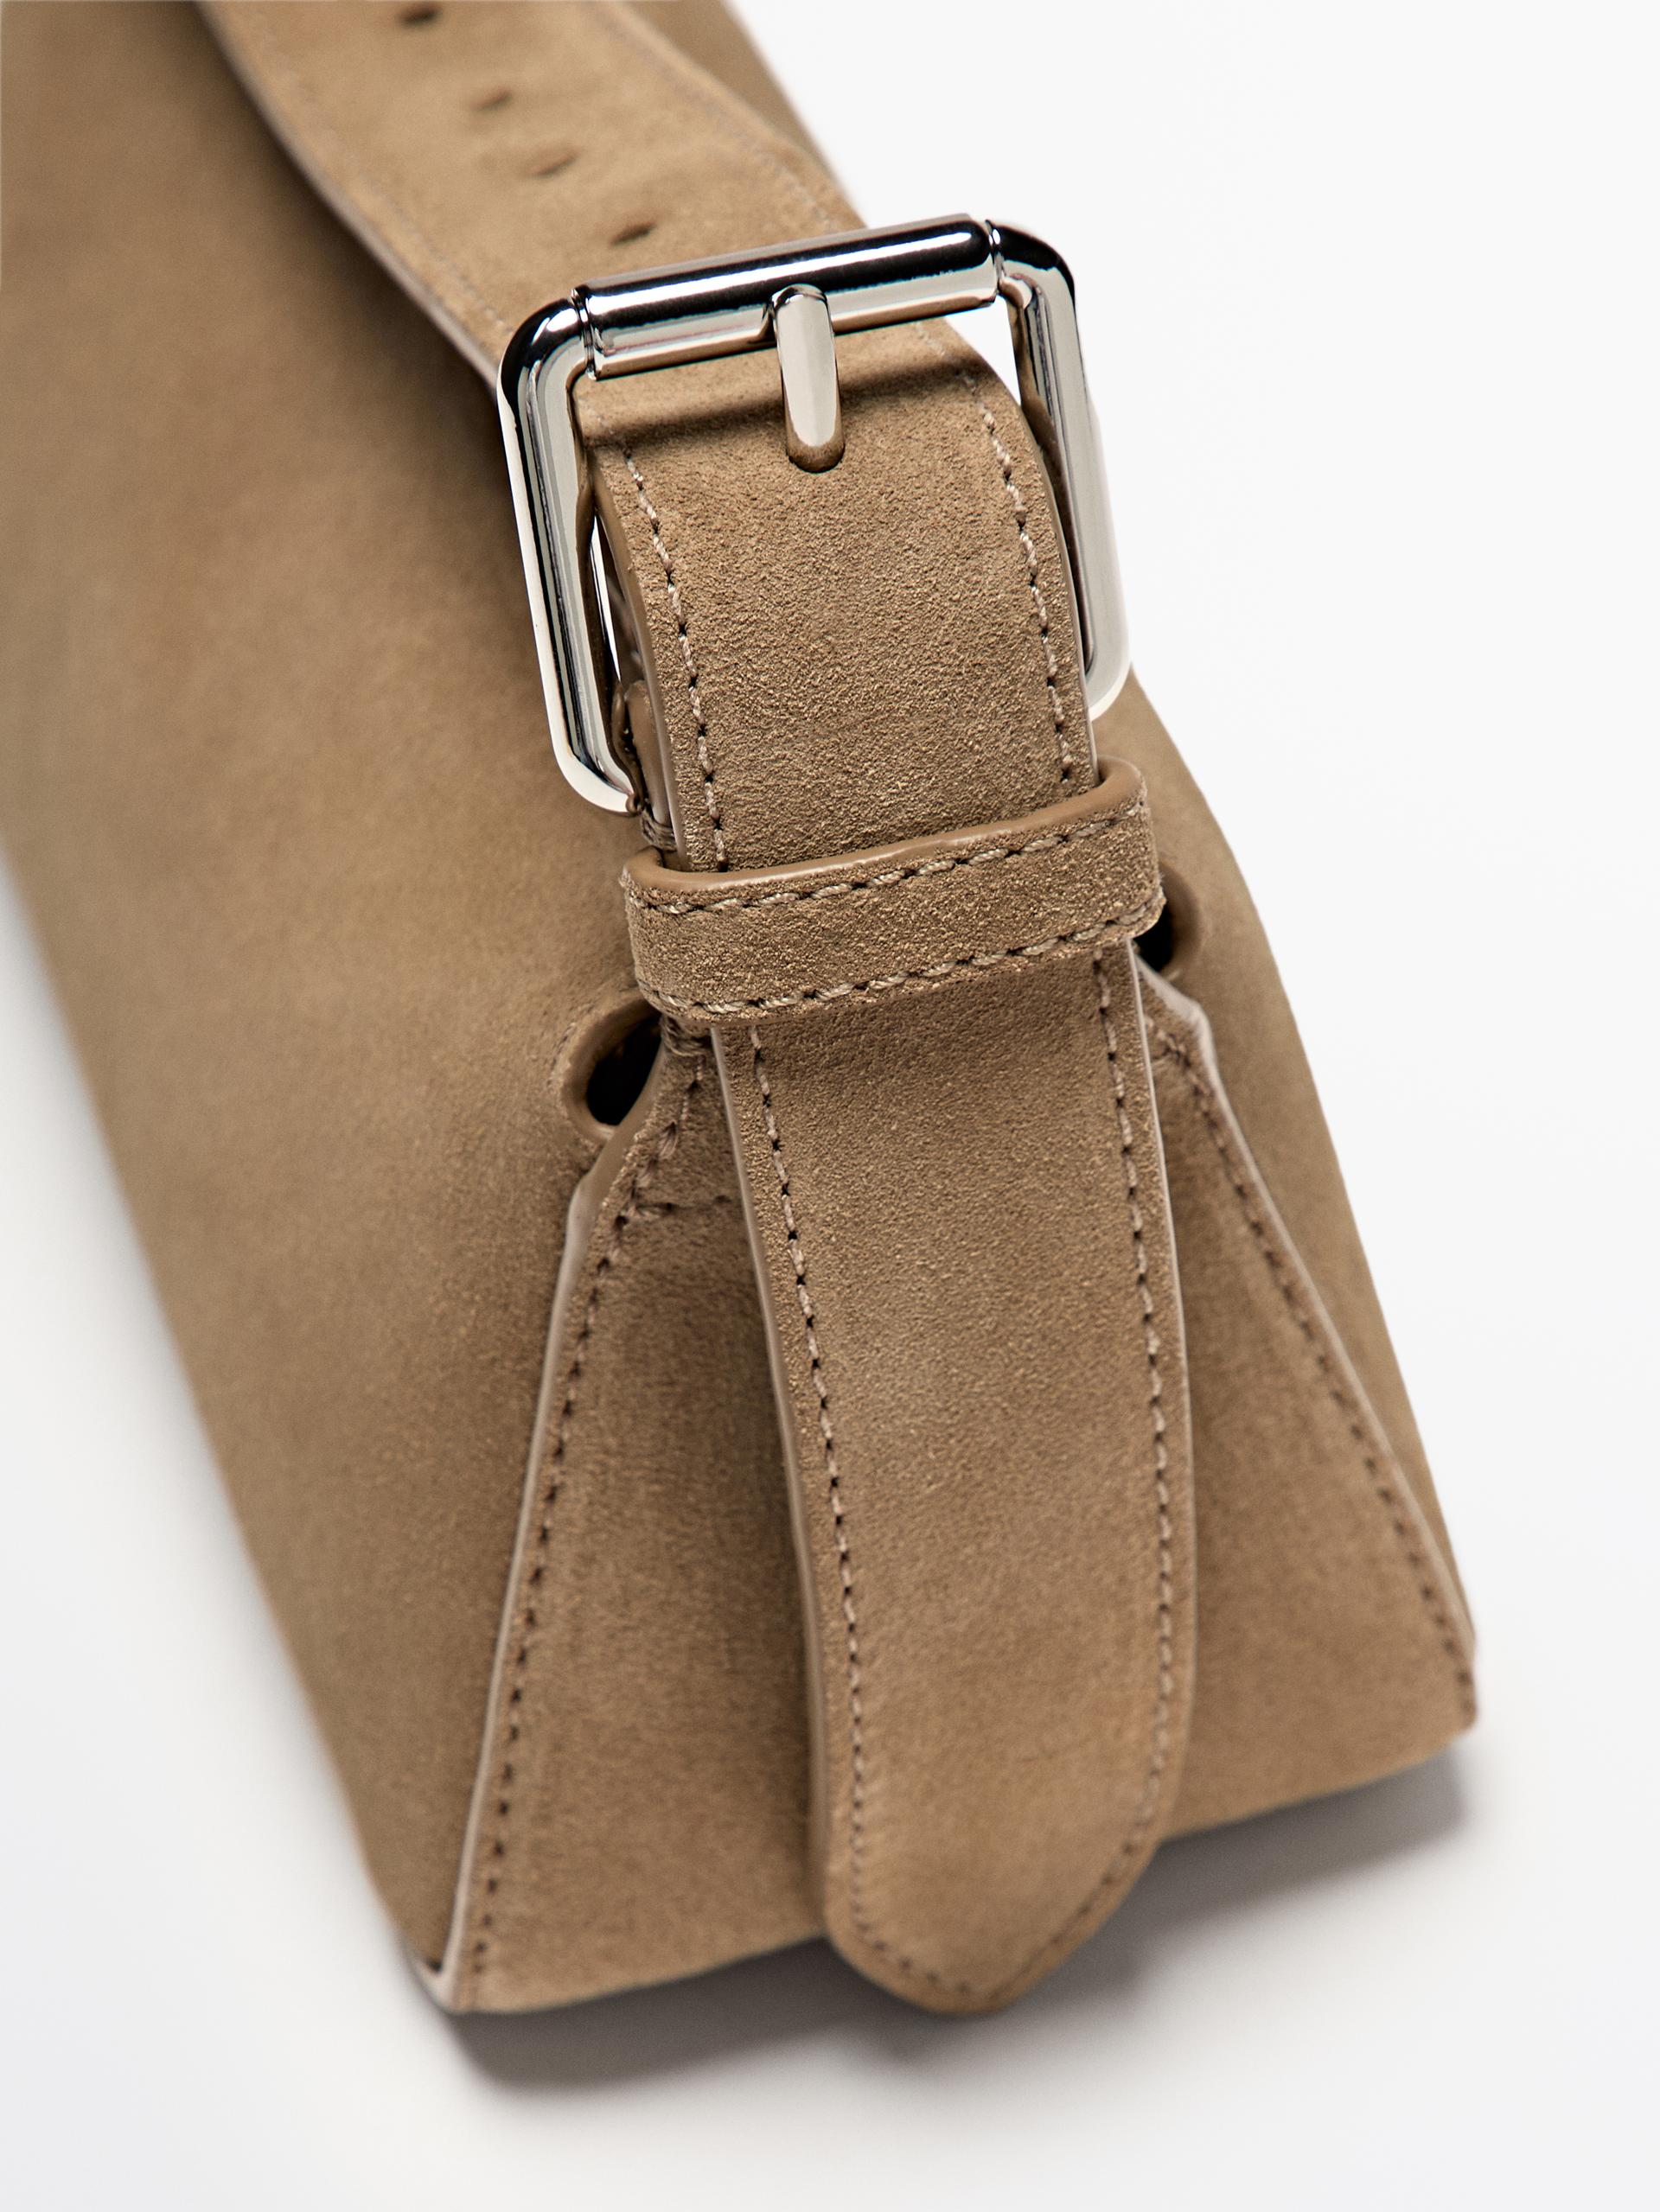 Adjustable split leather crossbody bag ZARA